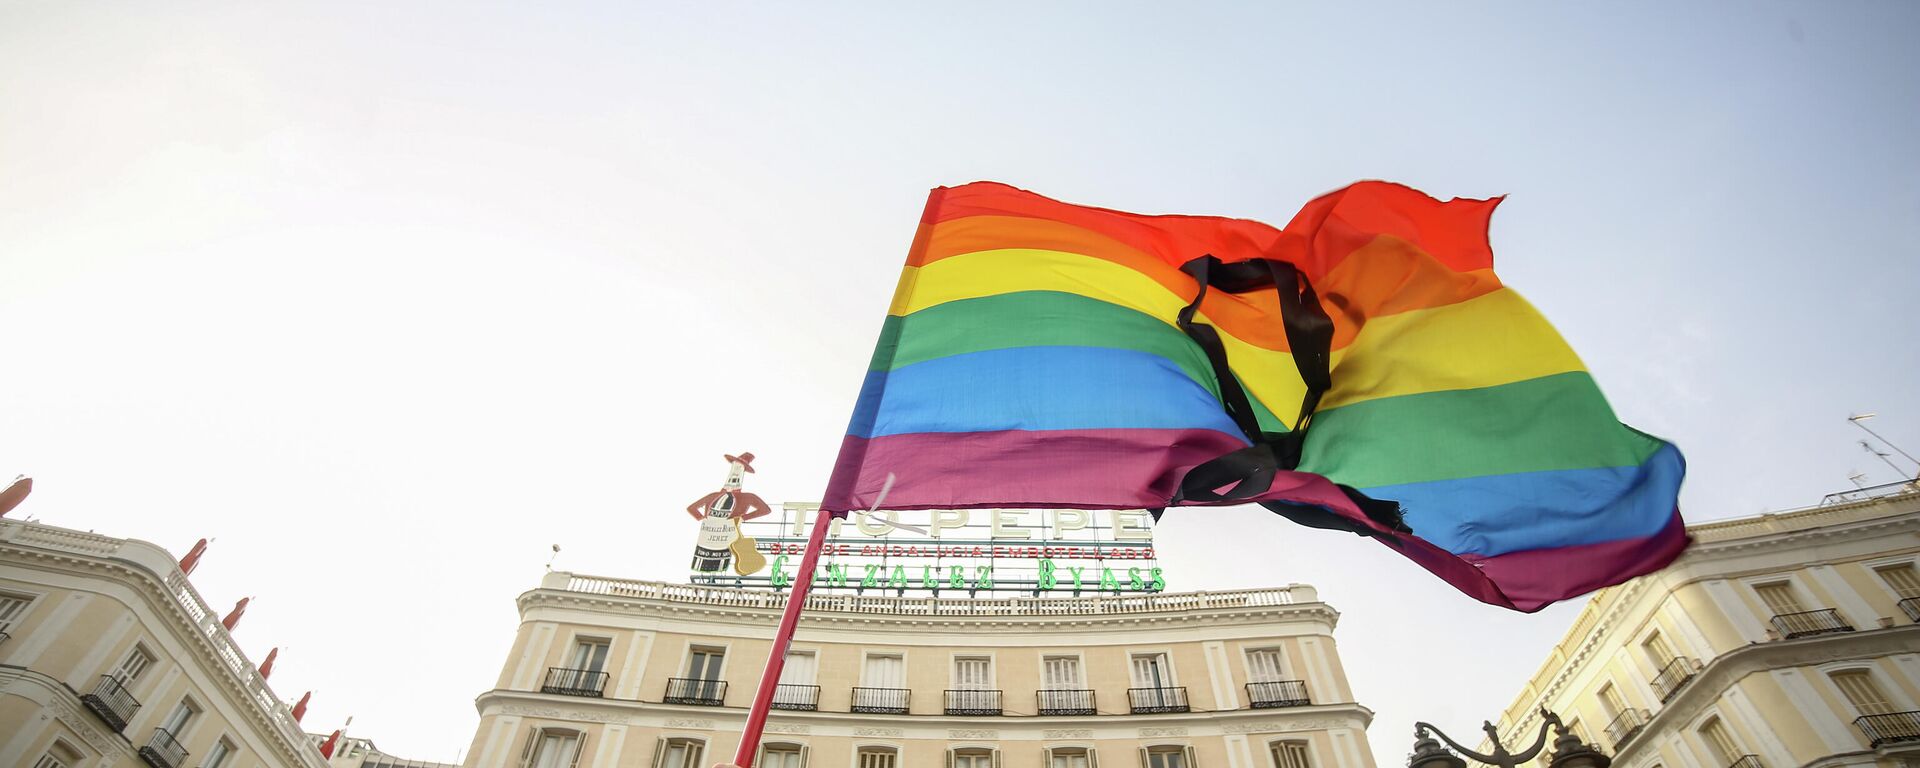 Una bandera LGBTI en una protesta contra homofobia en Madrod, España - Sputnik Mundo, 1920, 13.07.2021